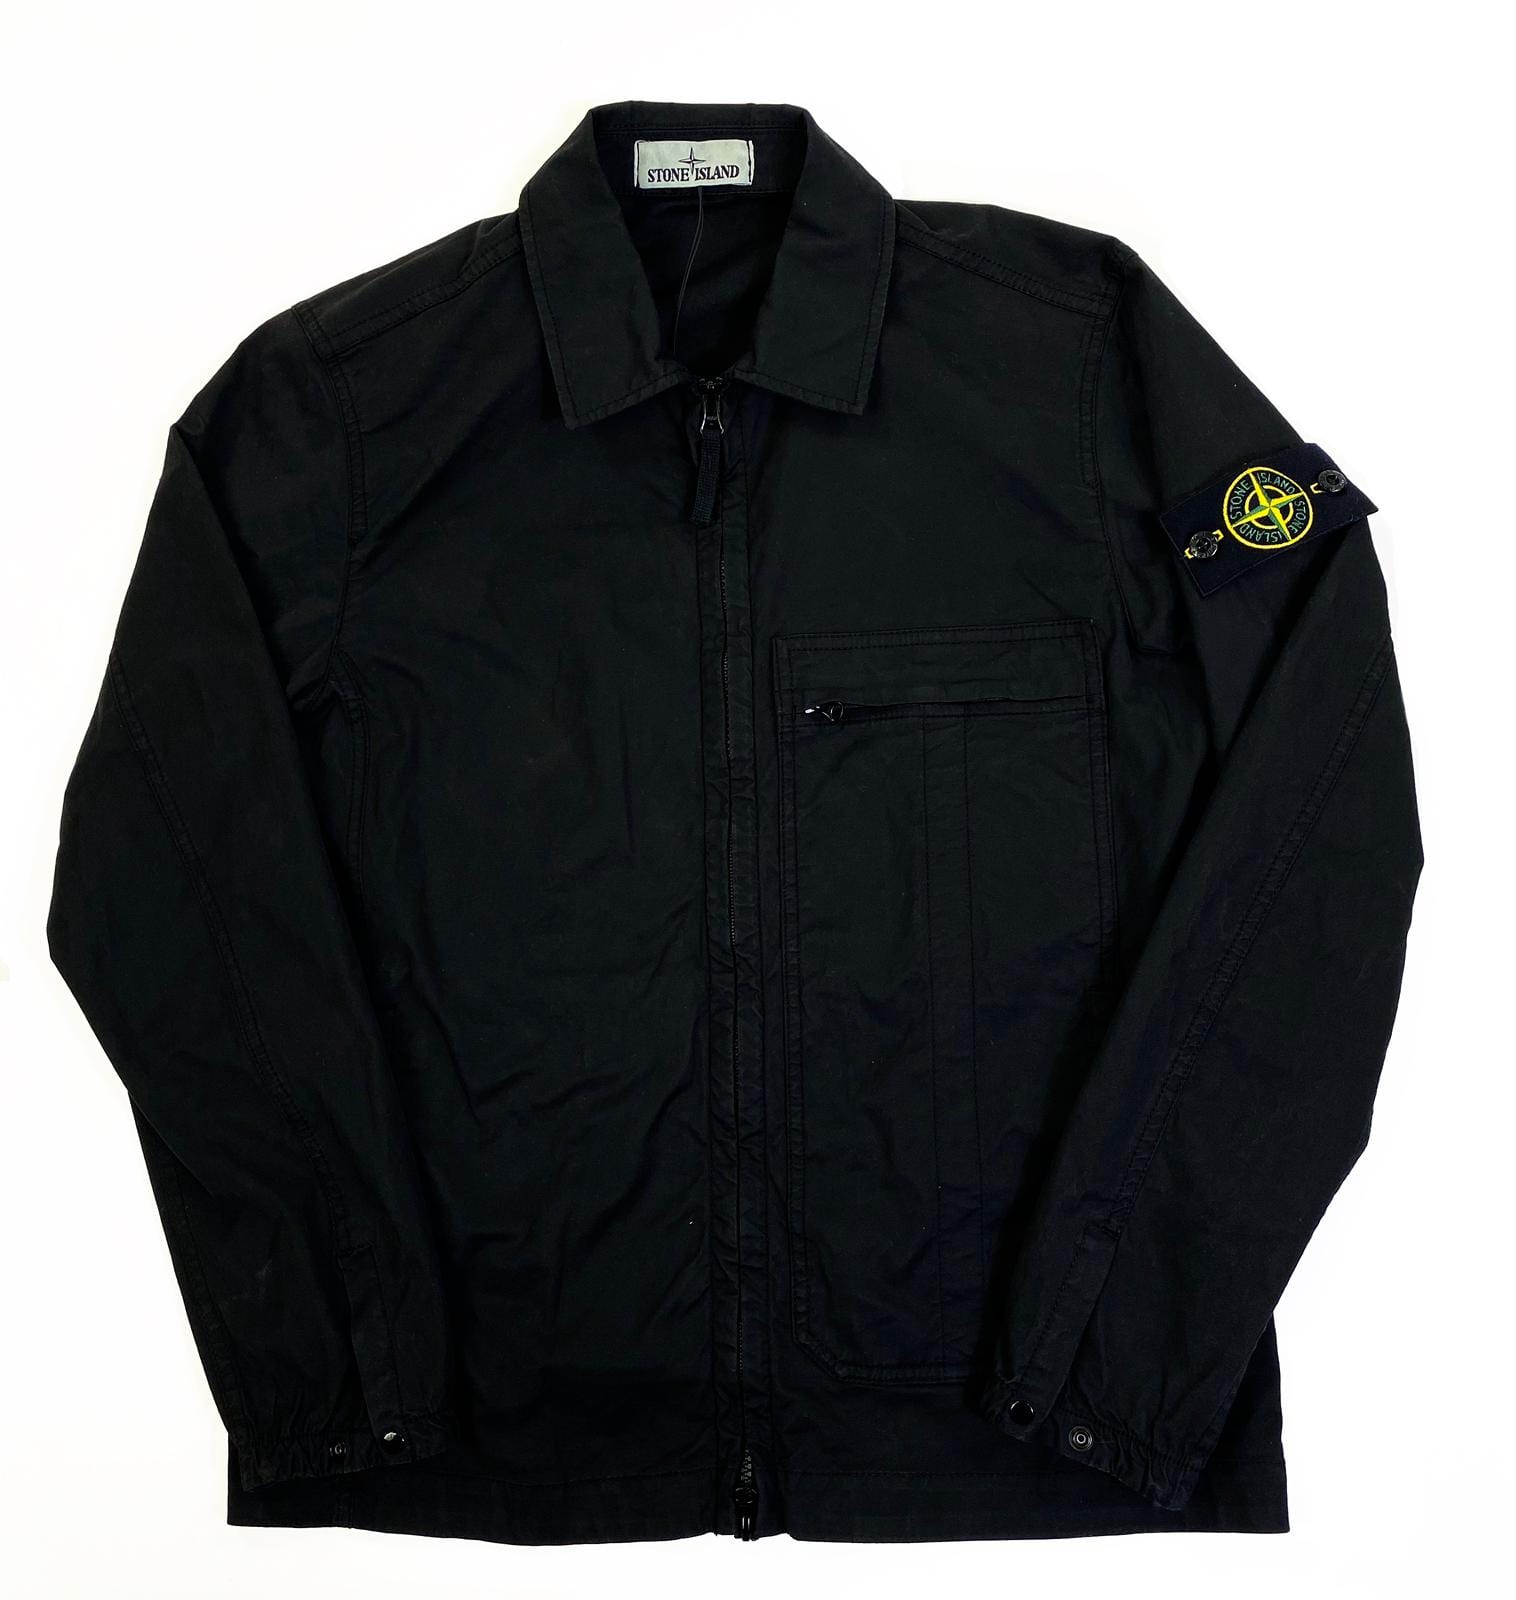 Stone Island 10319 Overshirt Black - Esquire Clothing